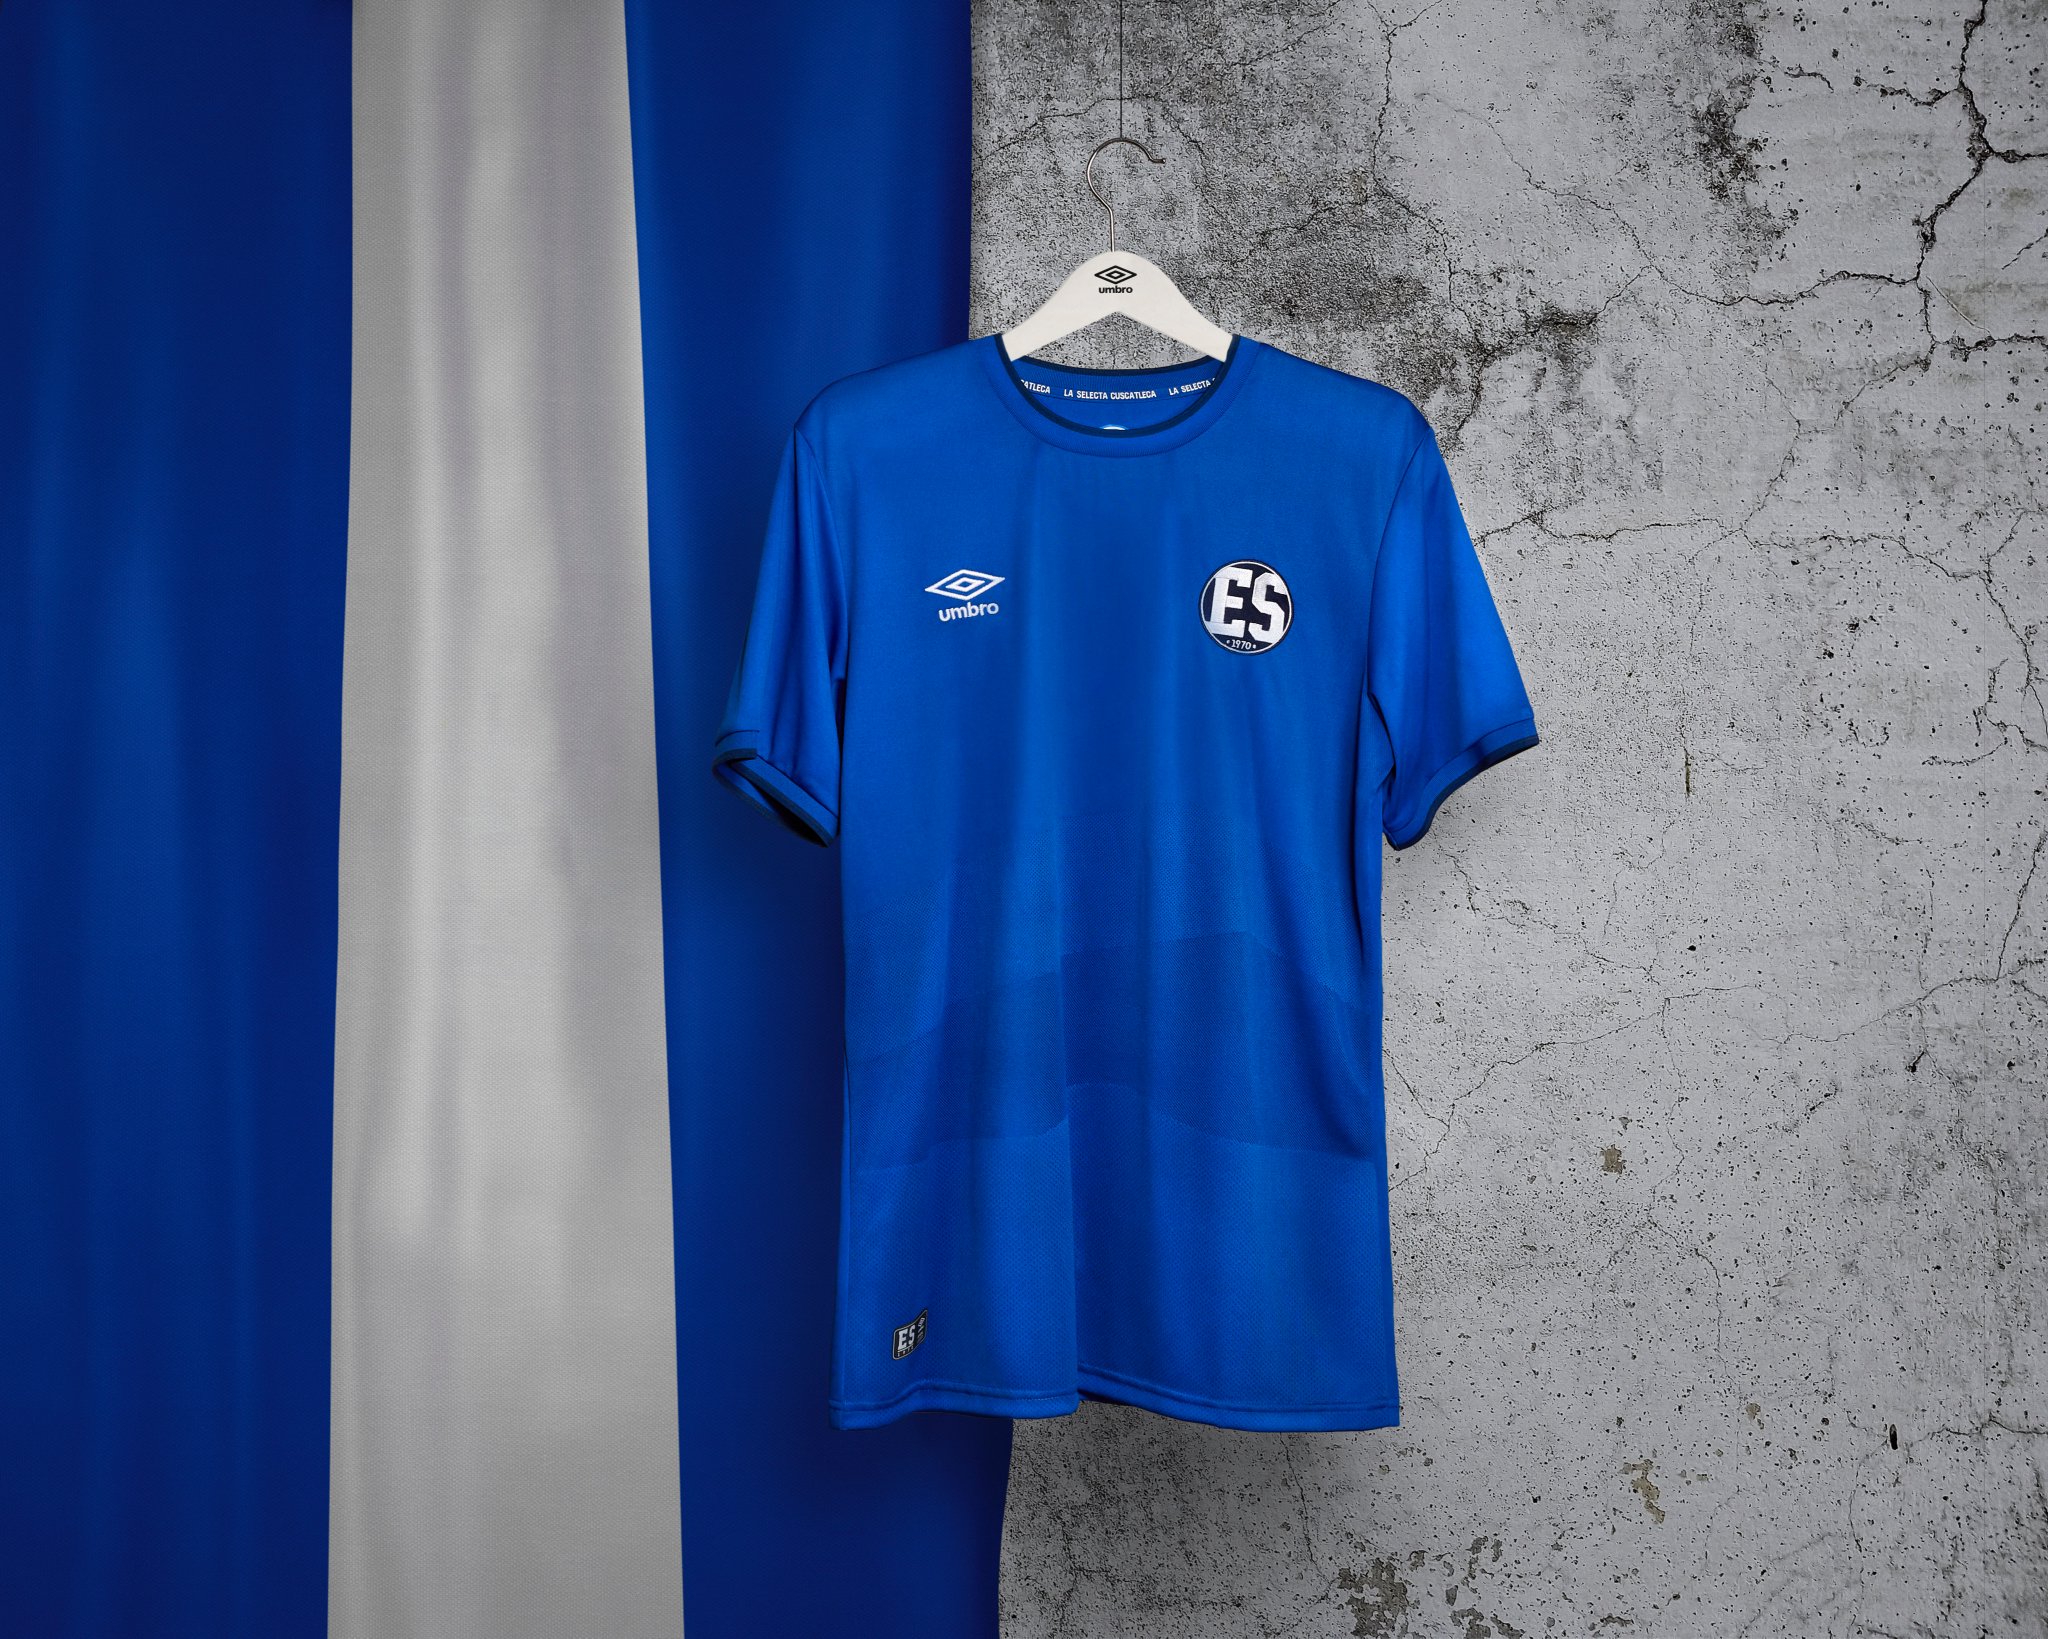 El Salvador 2020 Umbro 50th Anniversary Shirt - 20/21 Kits ...